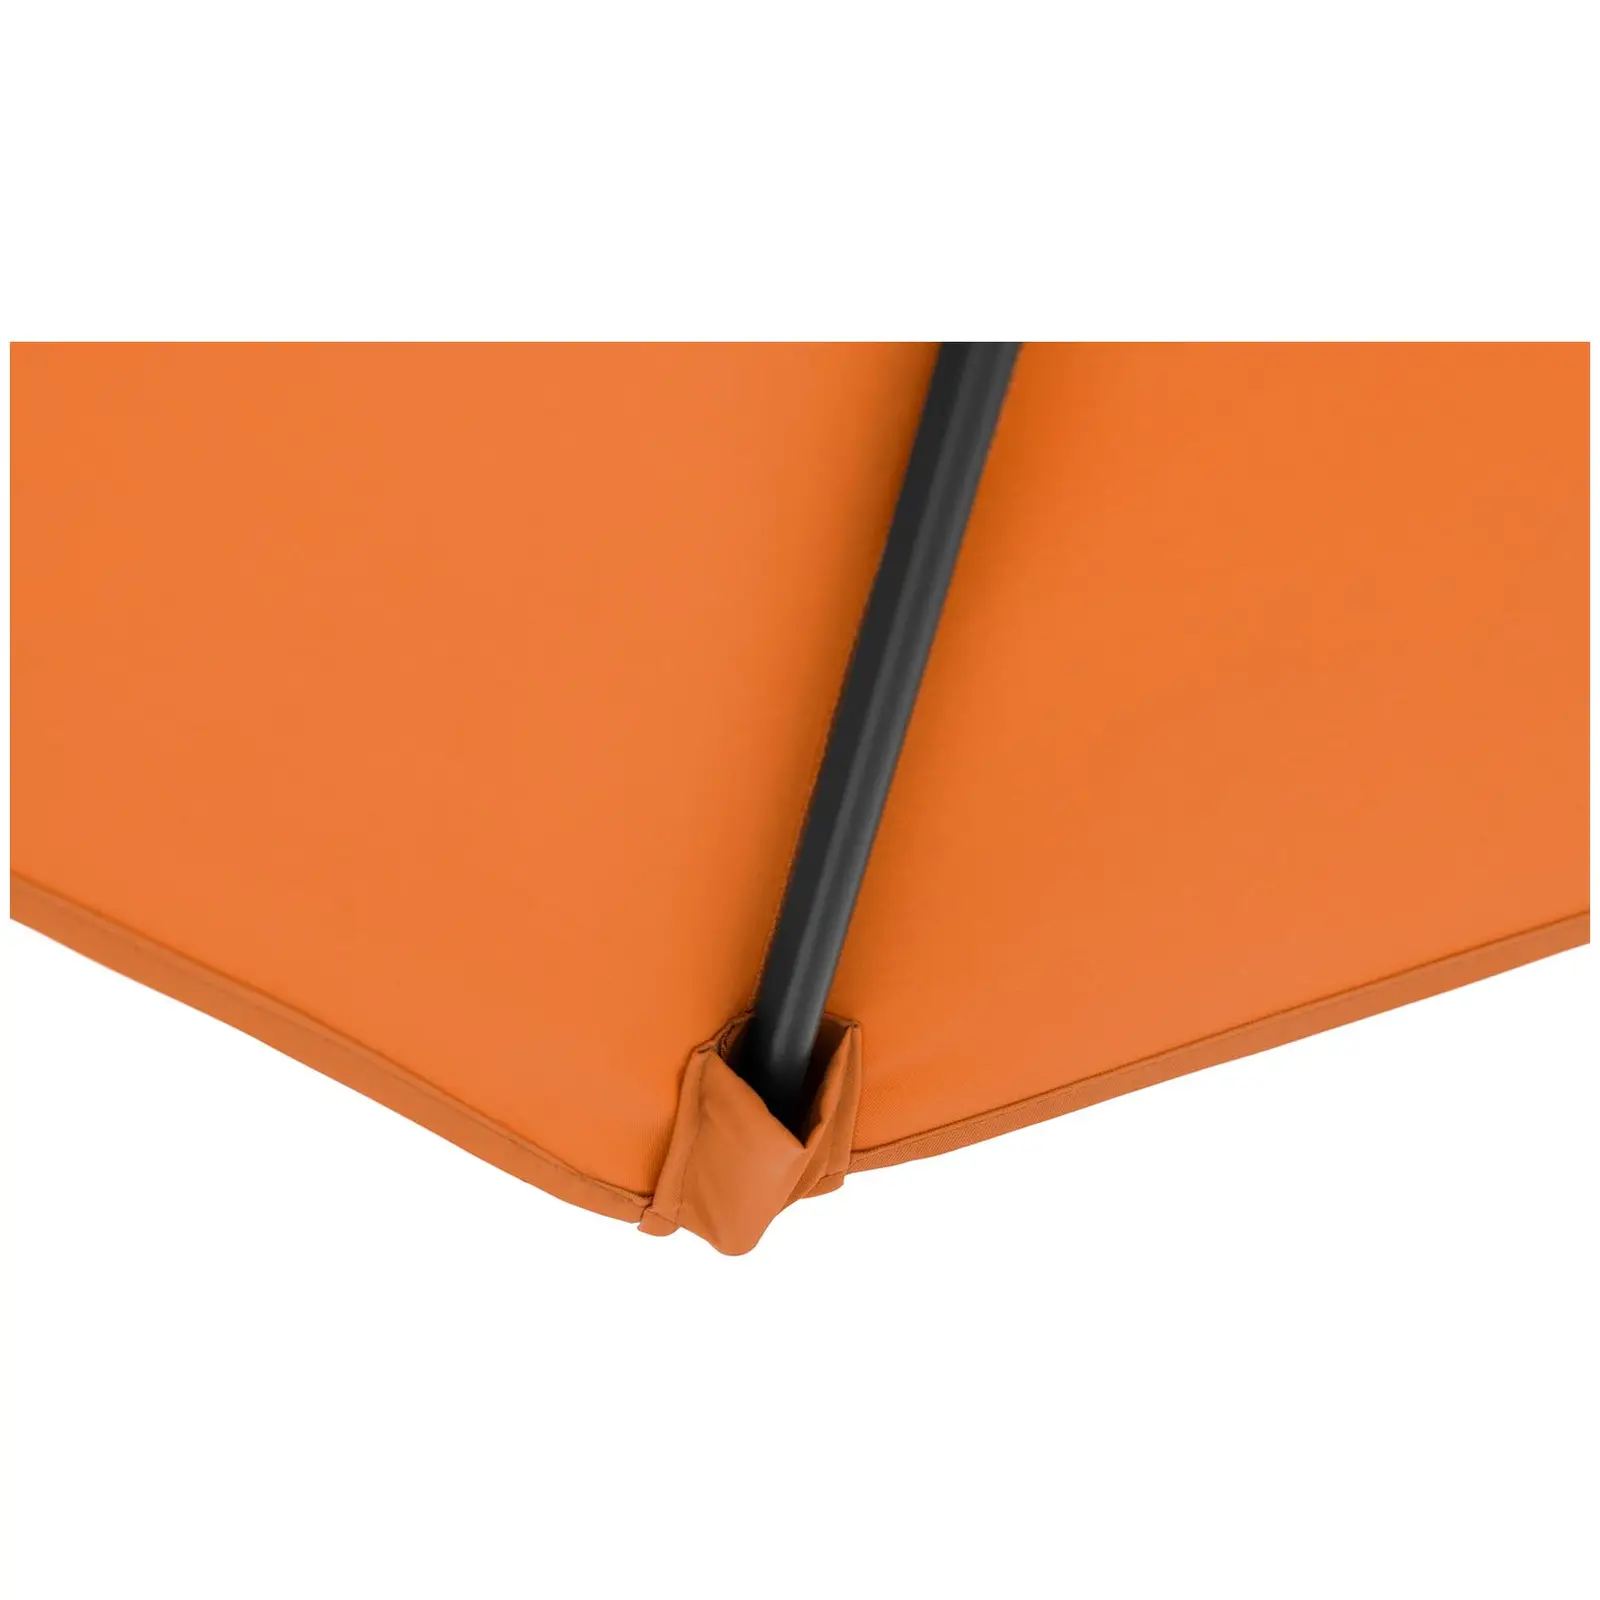 Ampelschirm - Orange - rund - Ø 300 cm - neigbar - 8